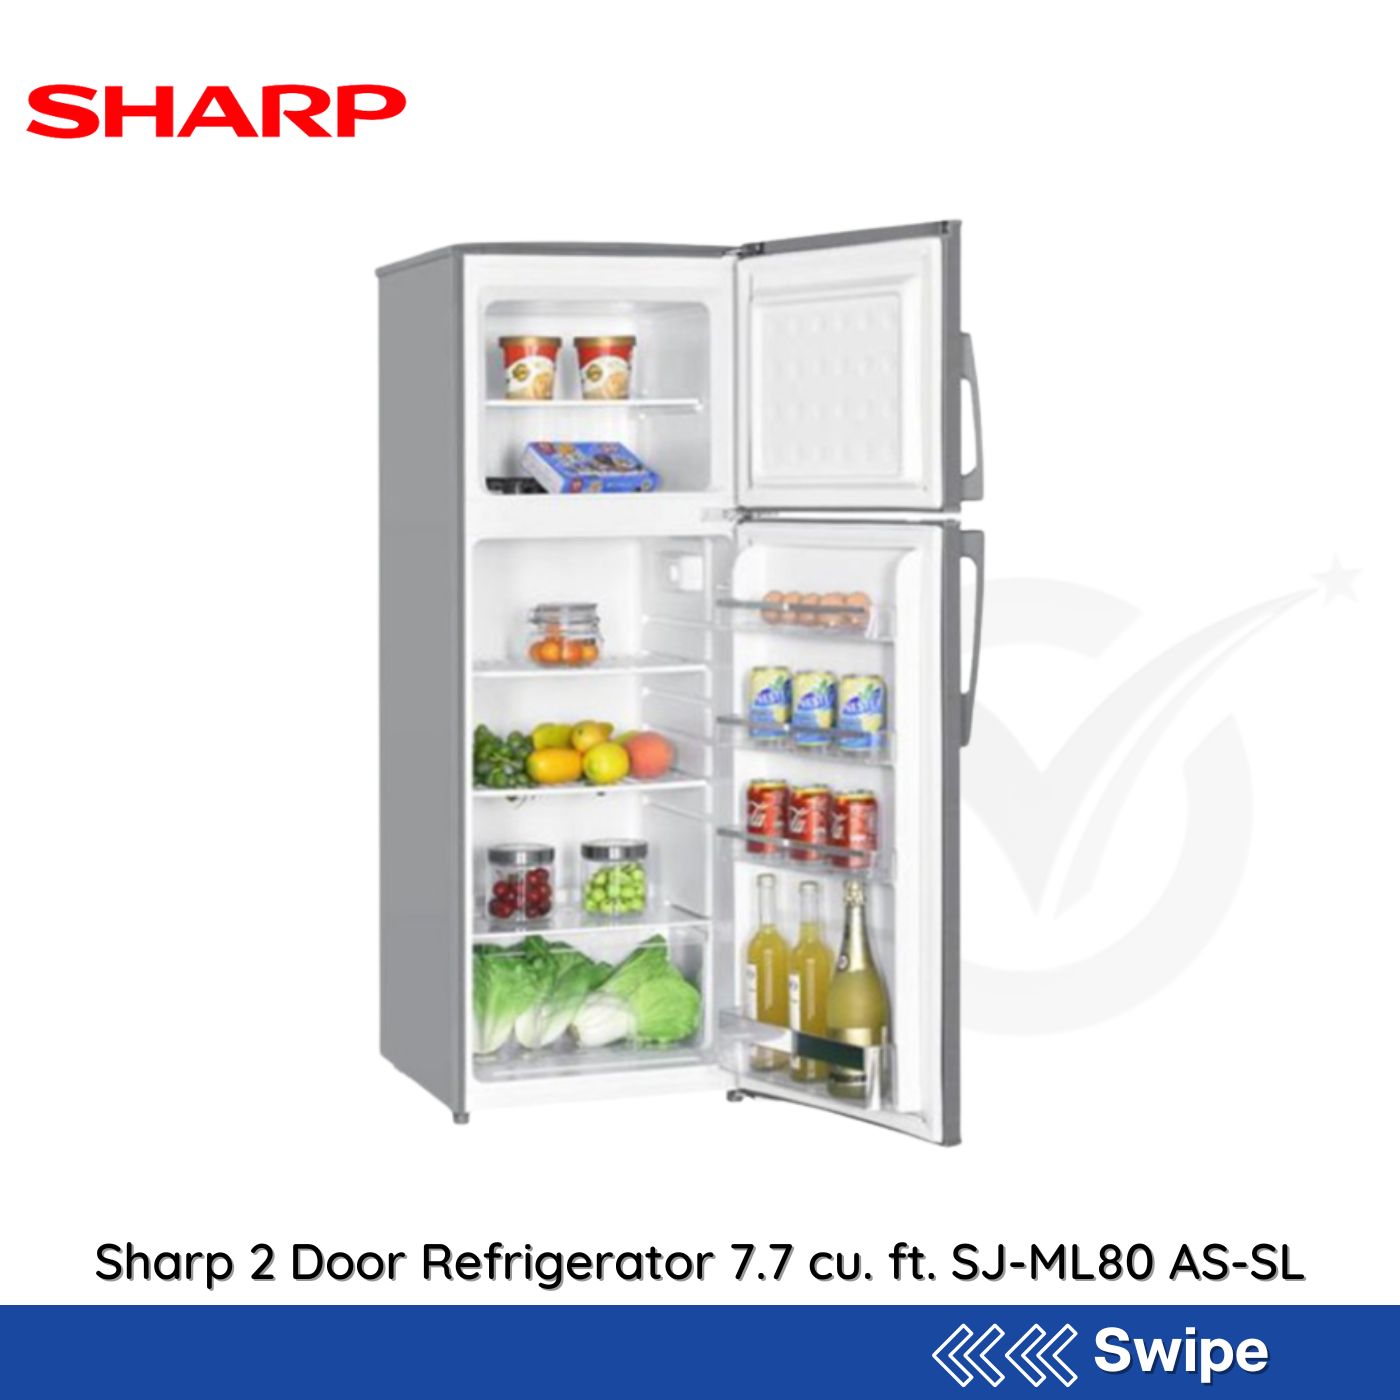 Sharp 2 Door Refrigerator 7.7 cu. ft. SJ-ML80 AS-SL